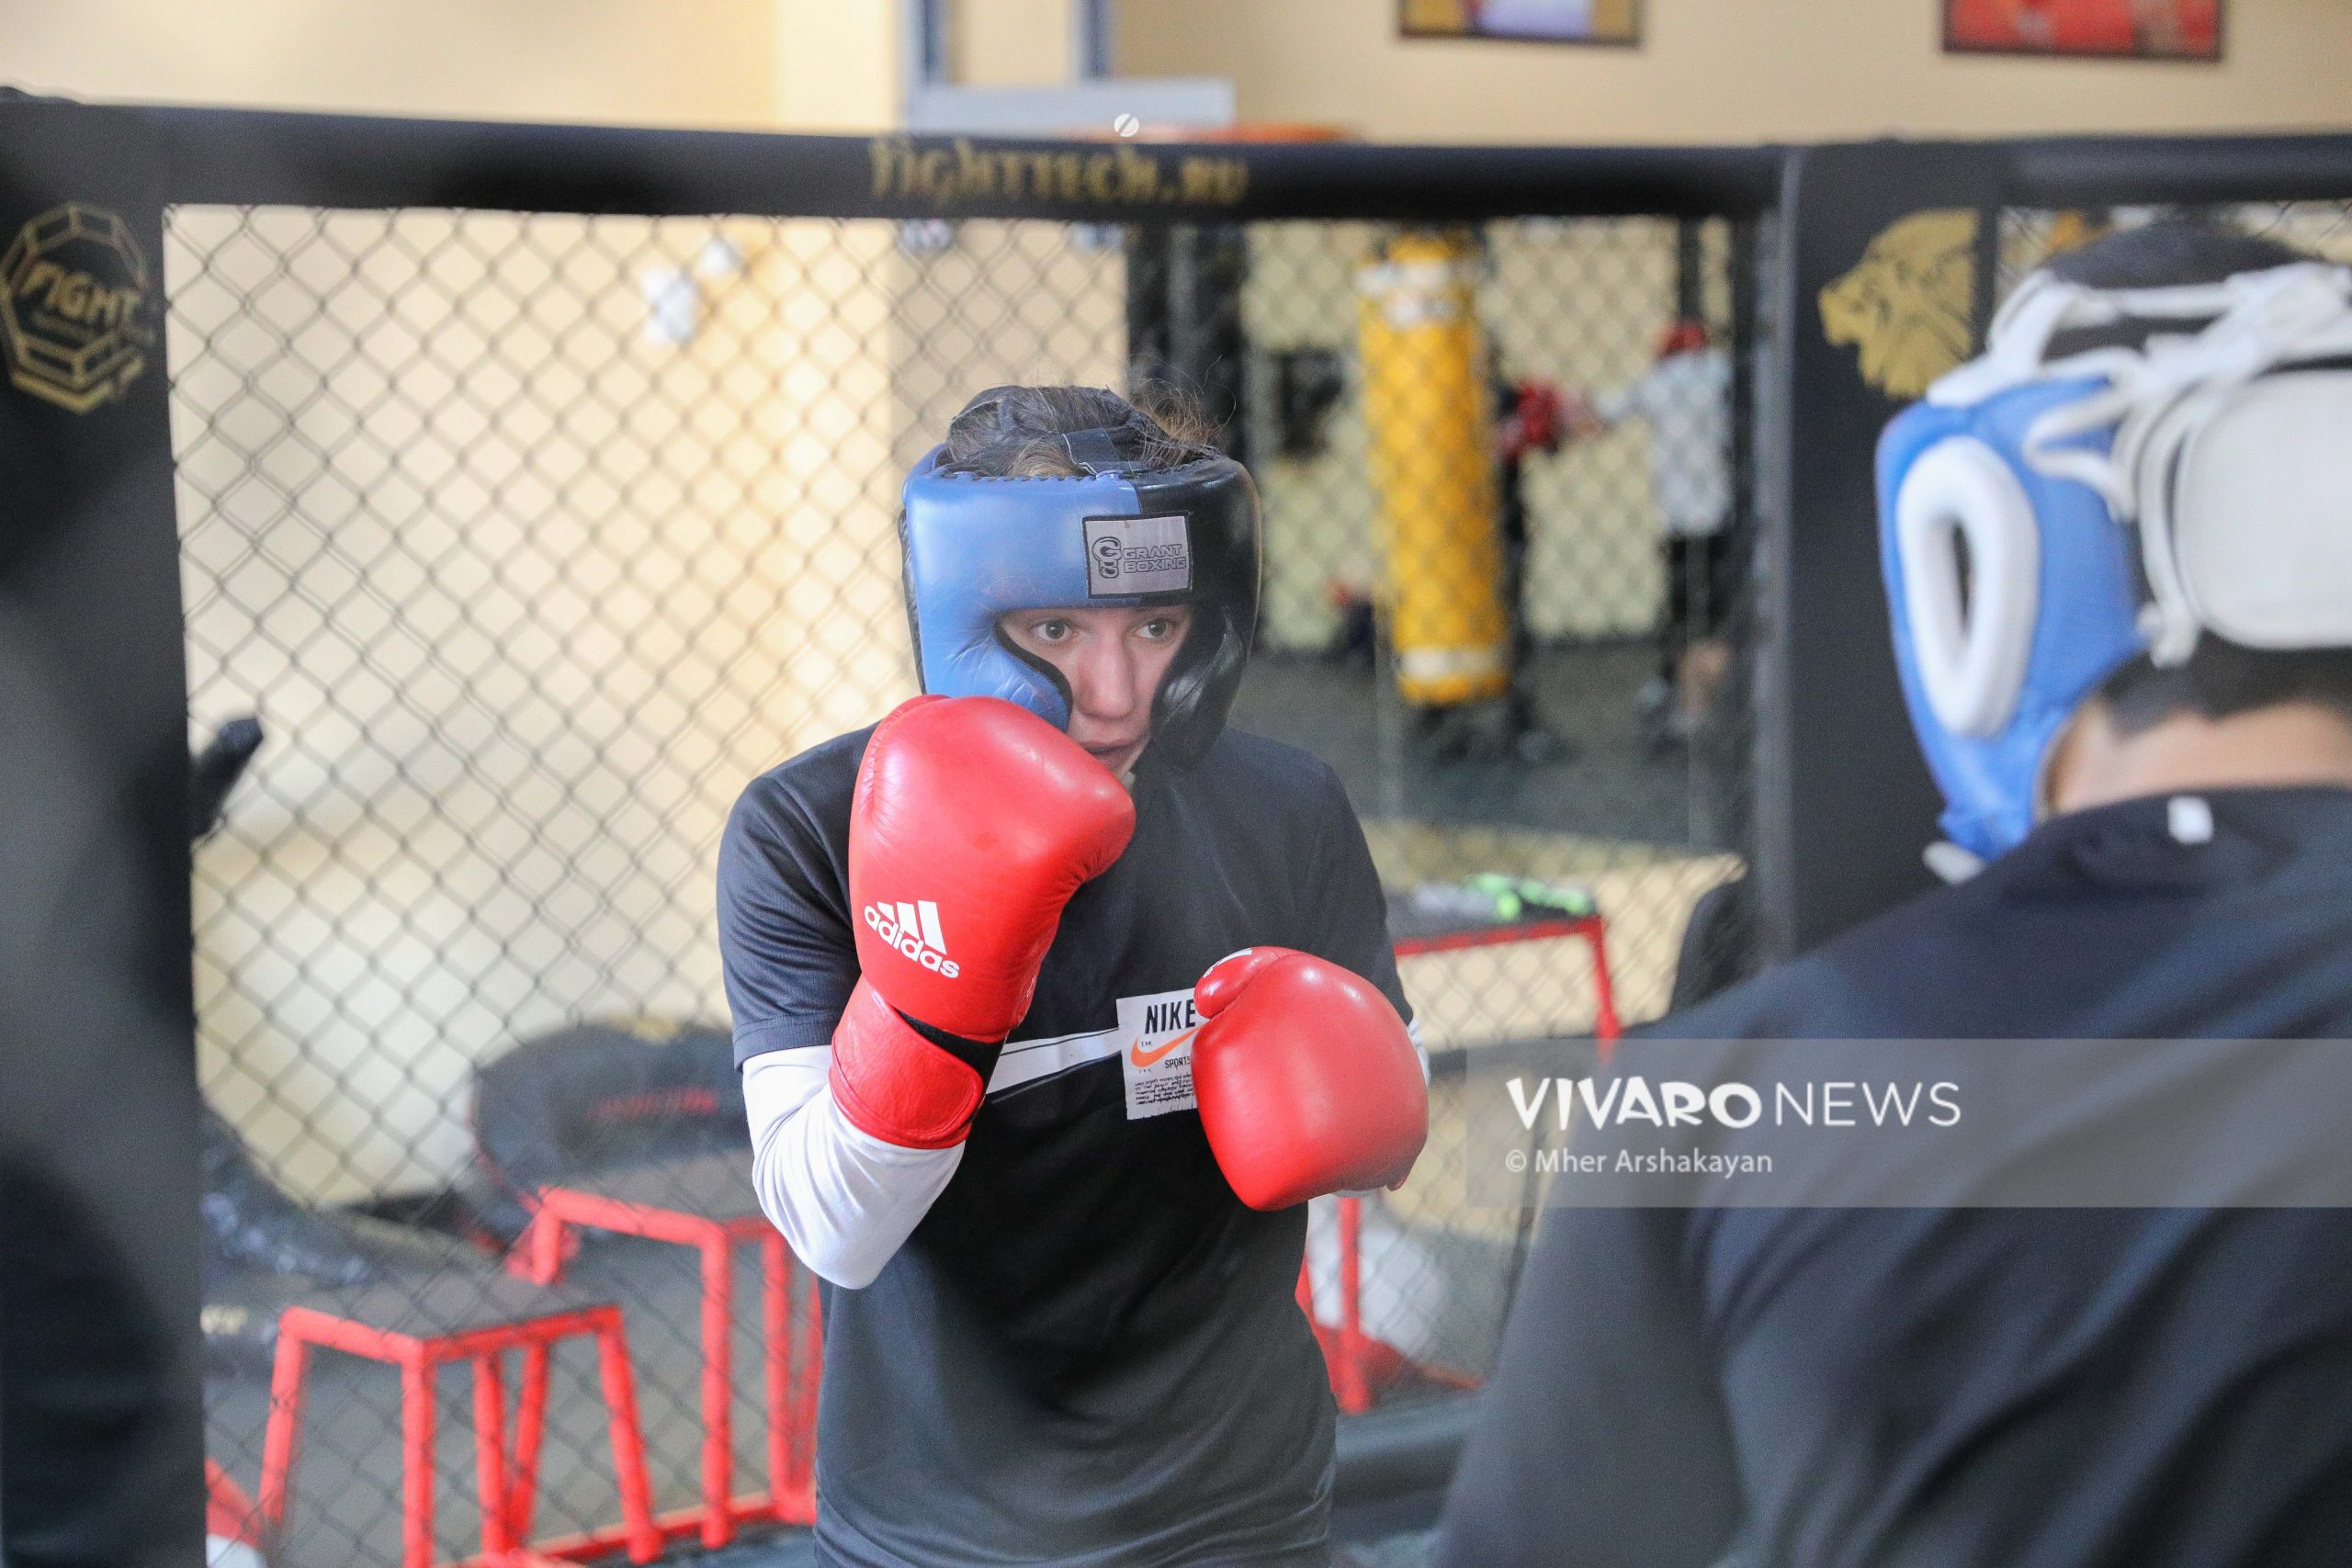 anush grigroyan boxing training 8 scaled - Դեպի տարվա առաջին քննություն. հայ բռնցքամարտիկների մարզումը լուսանկարներով